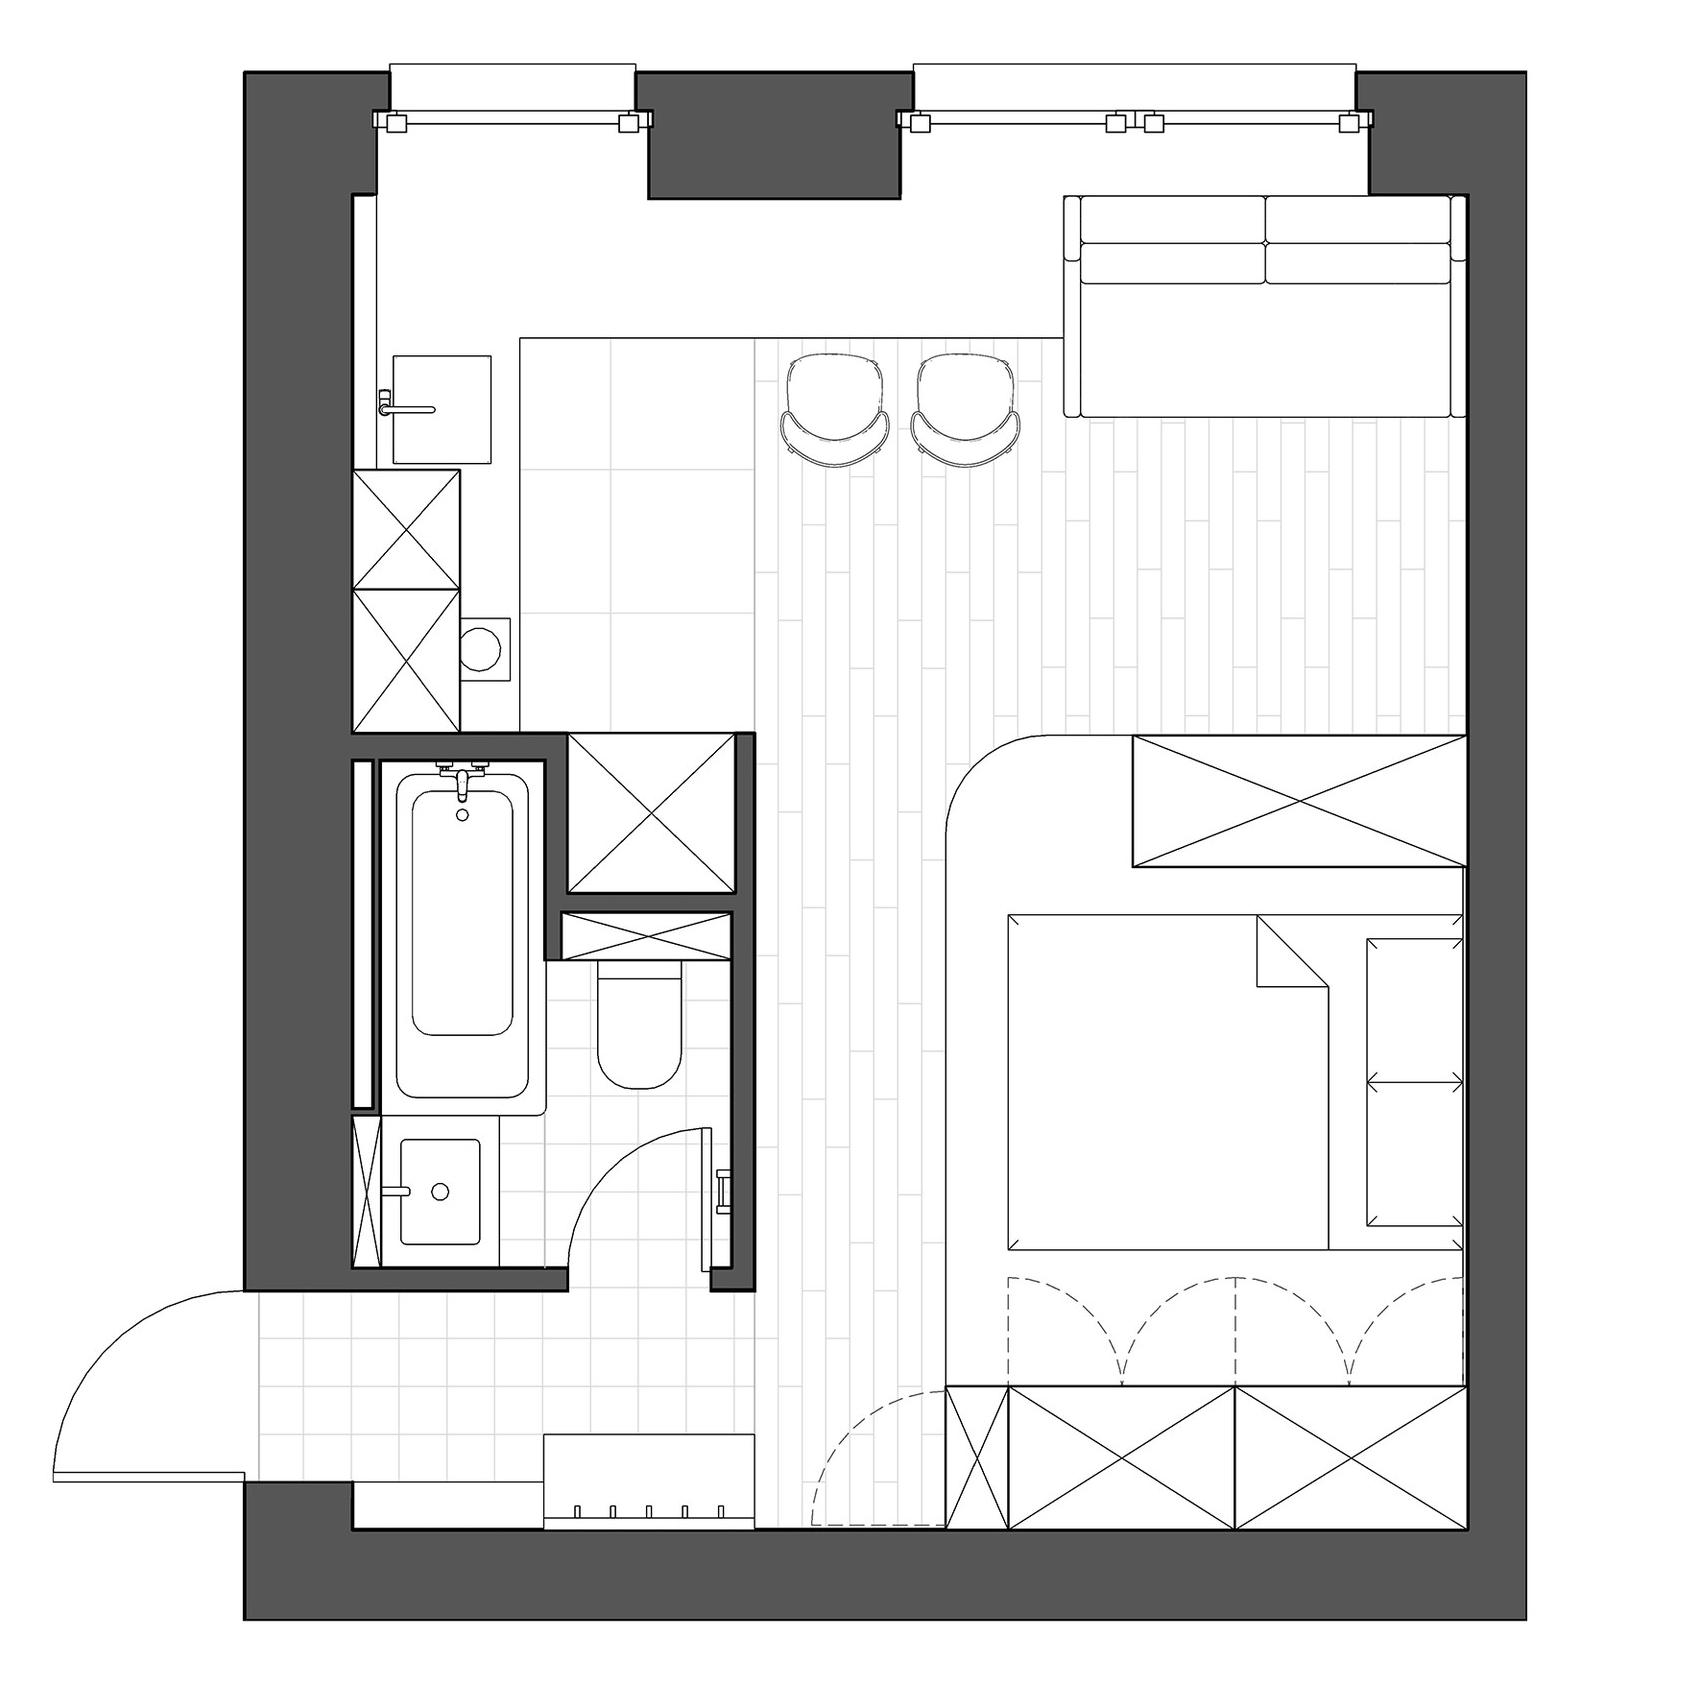 Sơ đồ thiết kế nội thất căn hộ 25m² sau cải tạo do NTK Lev Kononov cung cấp.